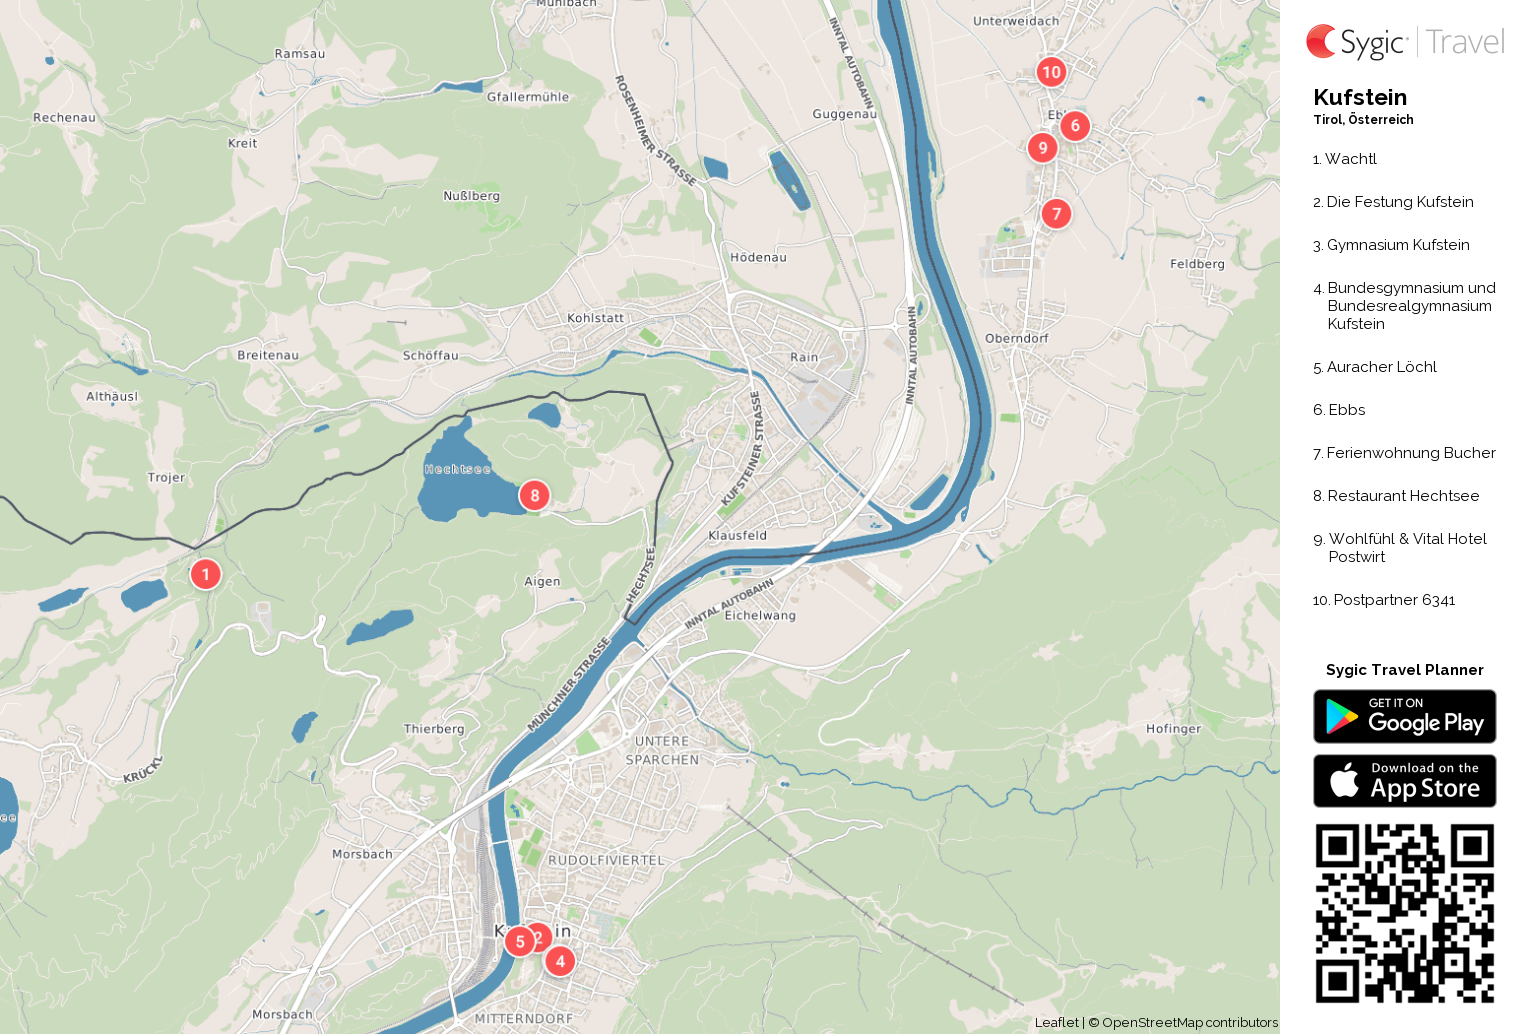 Karte von Kufstein ausdrucken | Sygic Travel